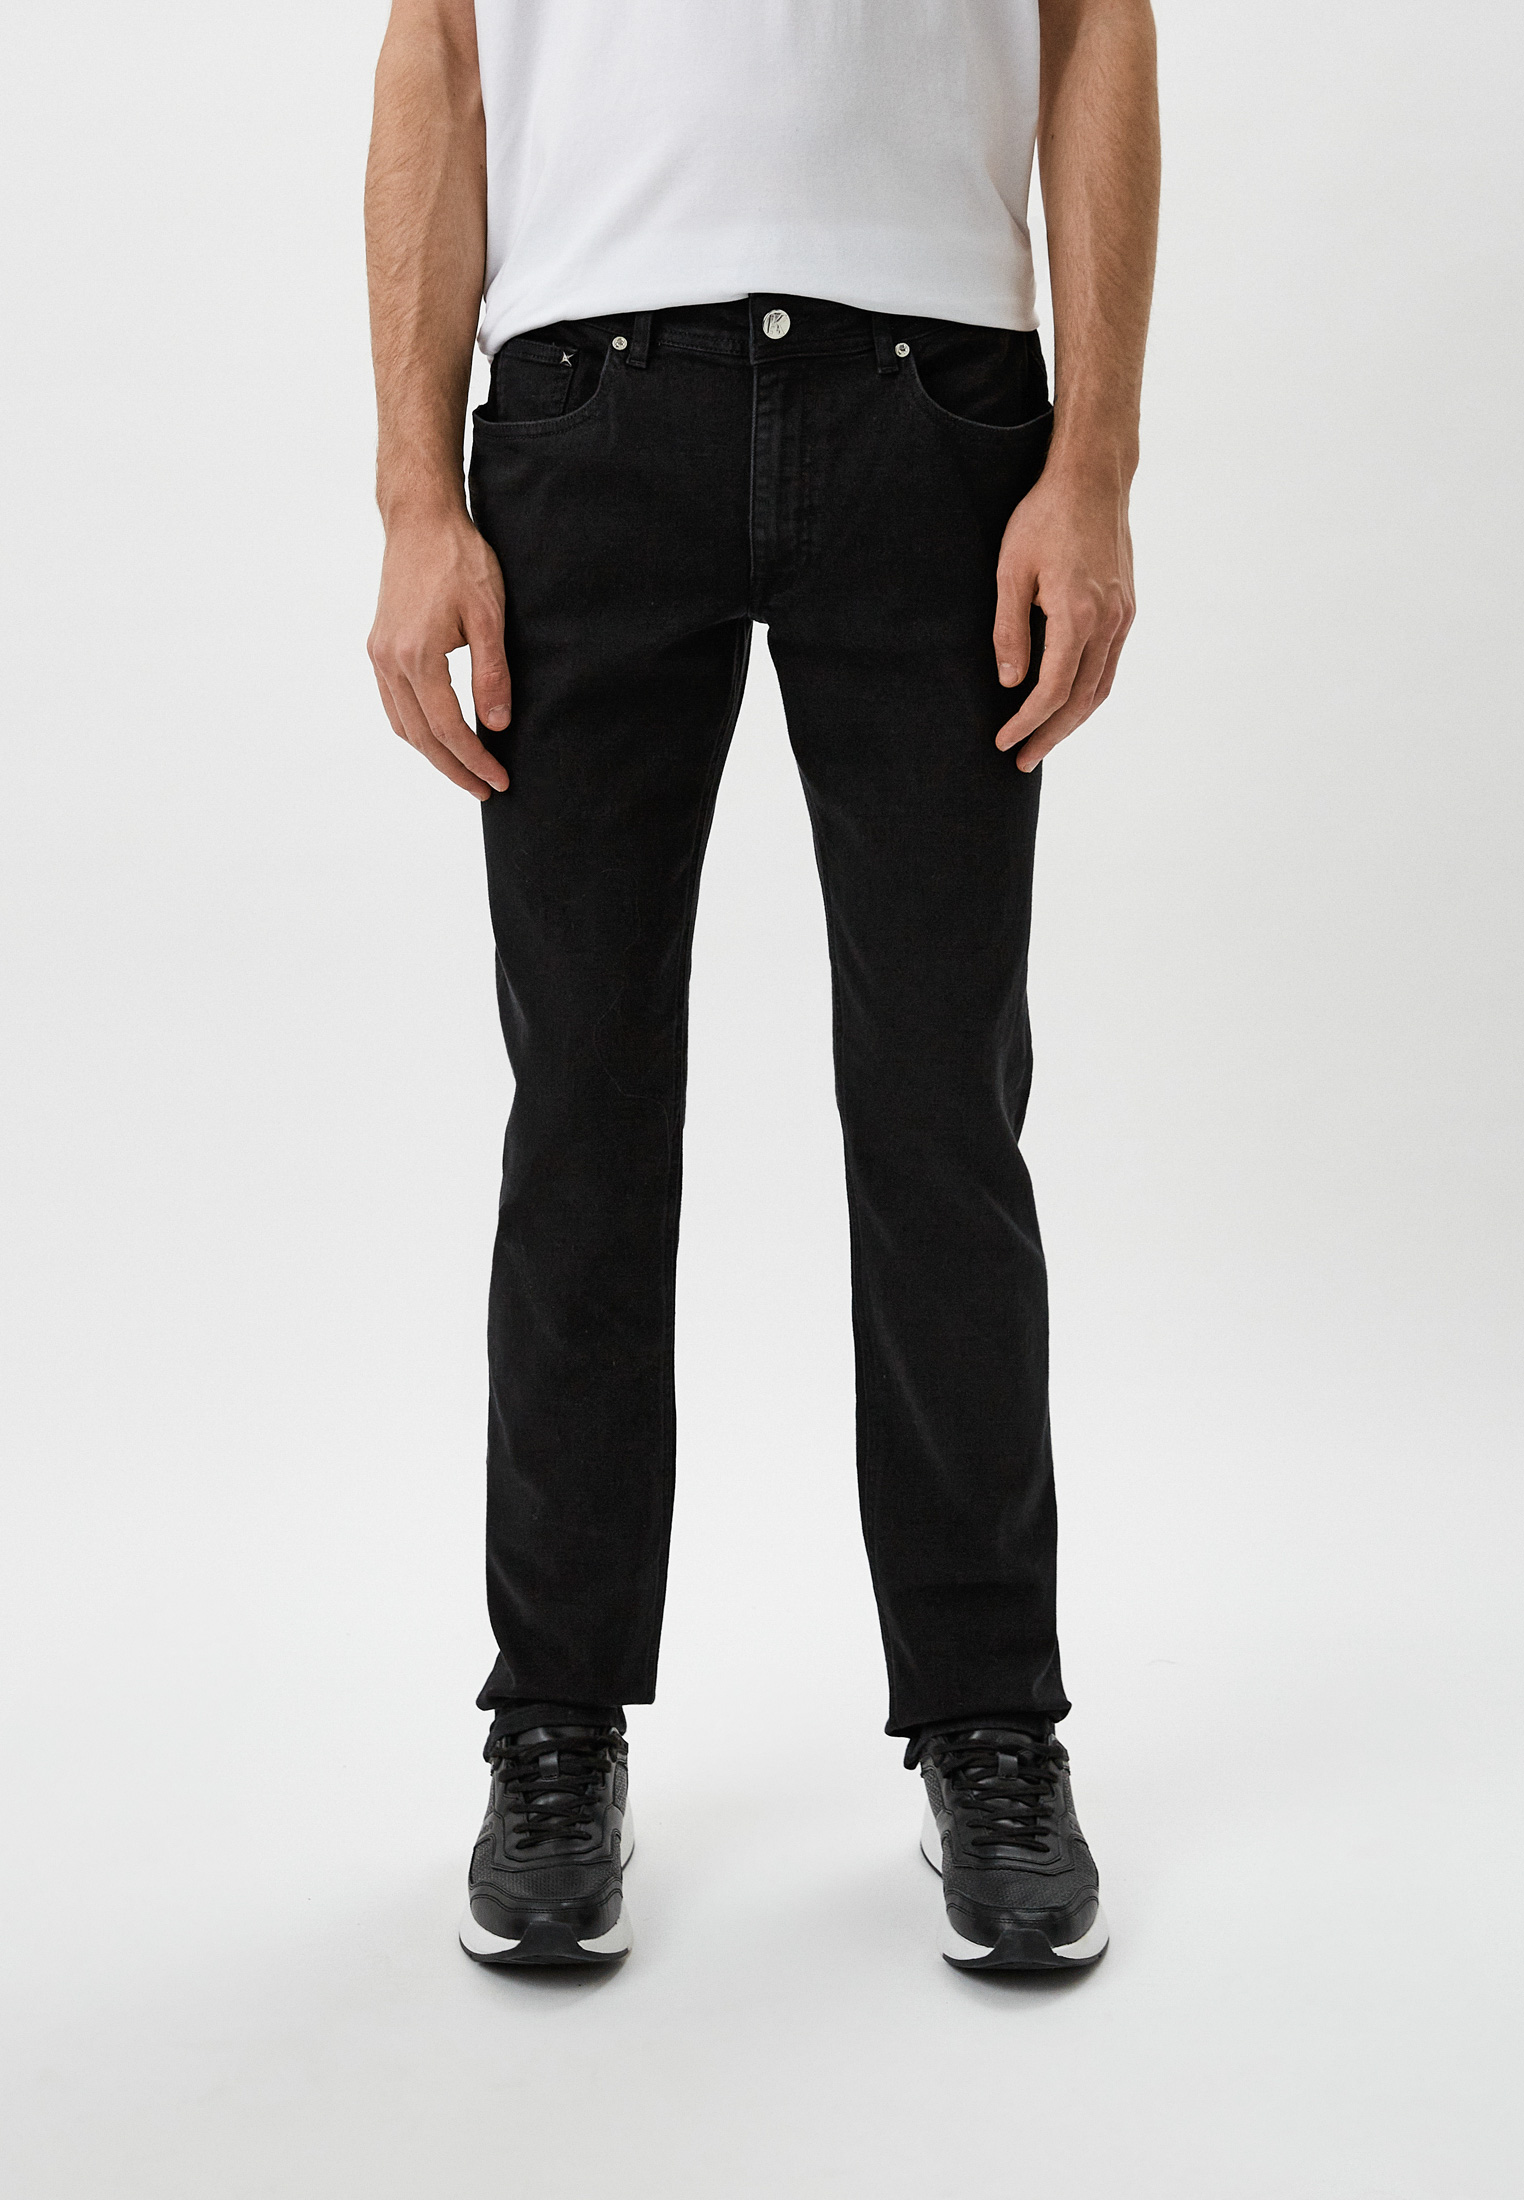 Мужские зауженные джинсы Karl Lagerfeld (Карл Лагерфельд) 521830-265840: изображение 1